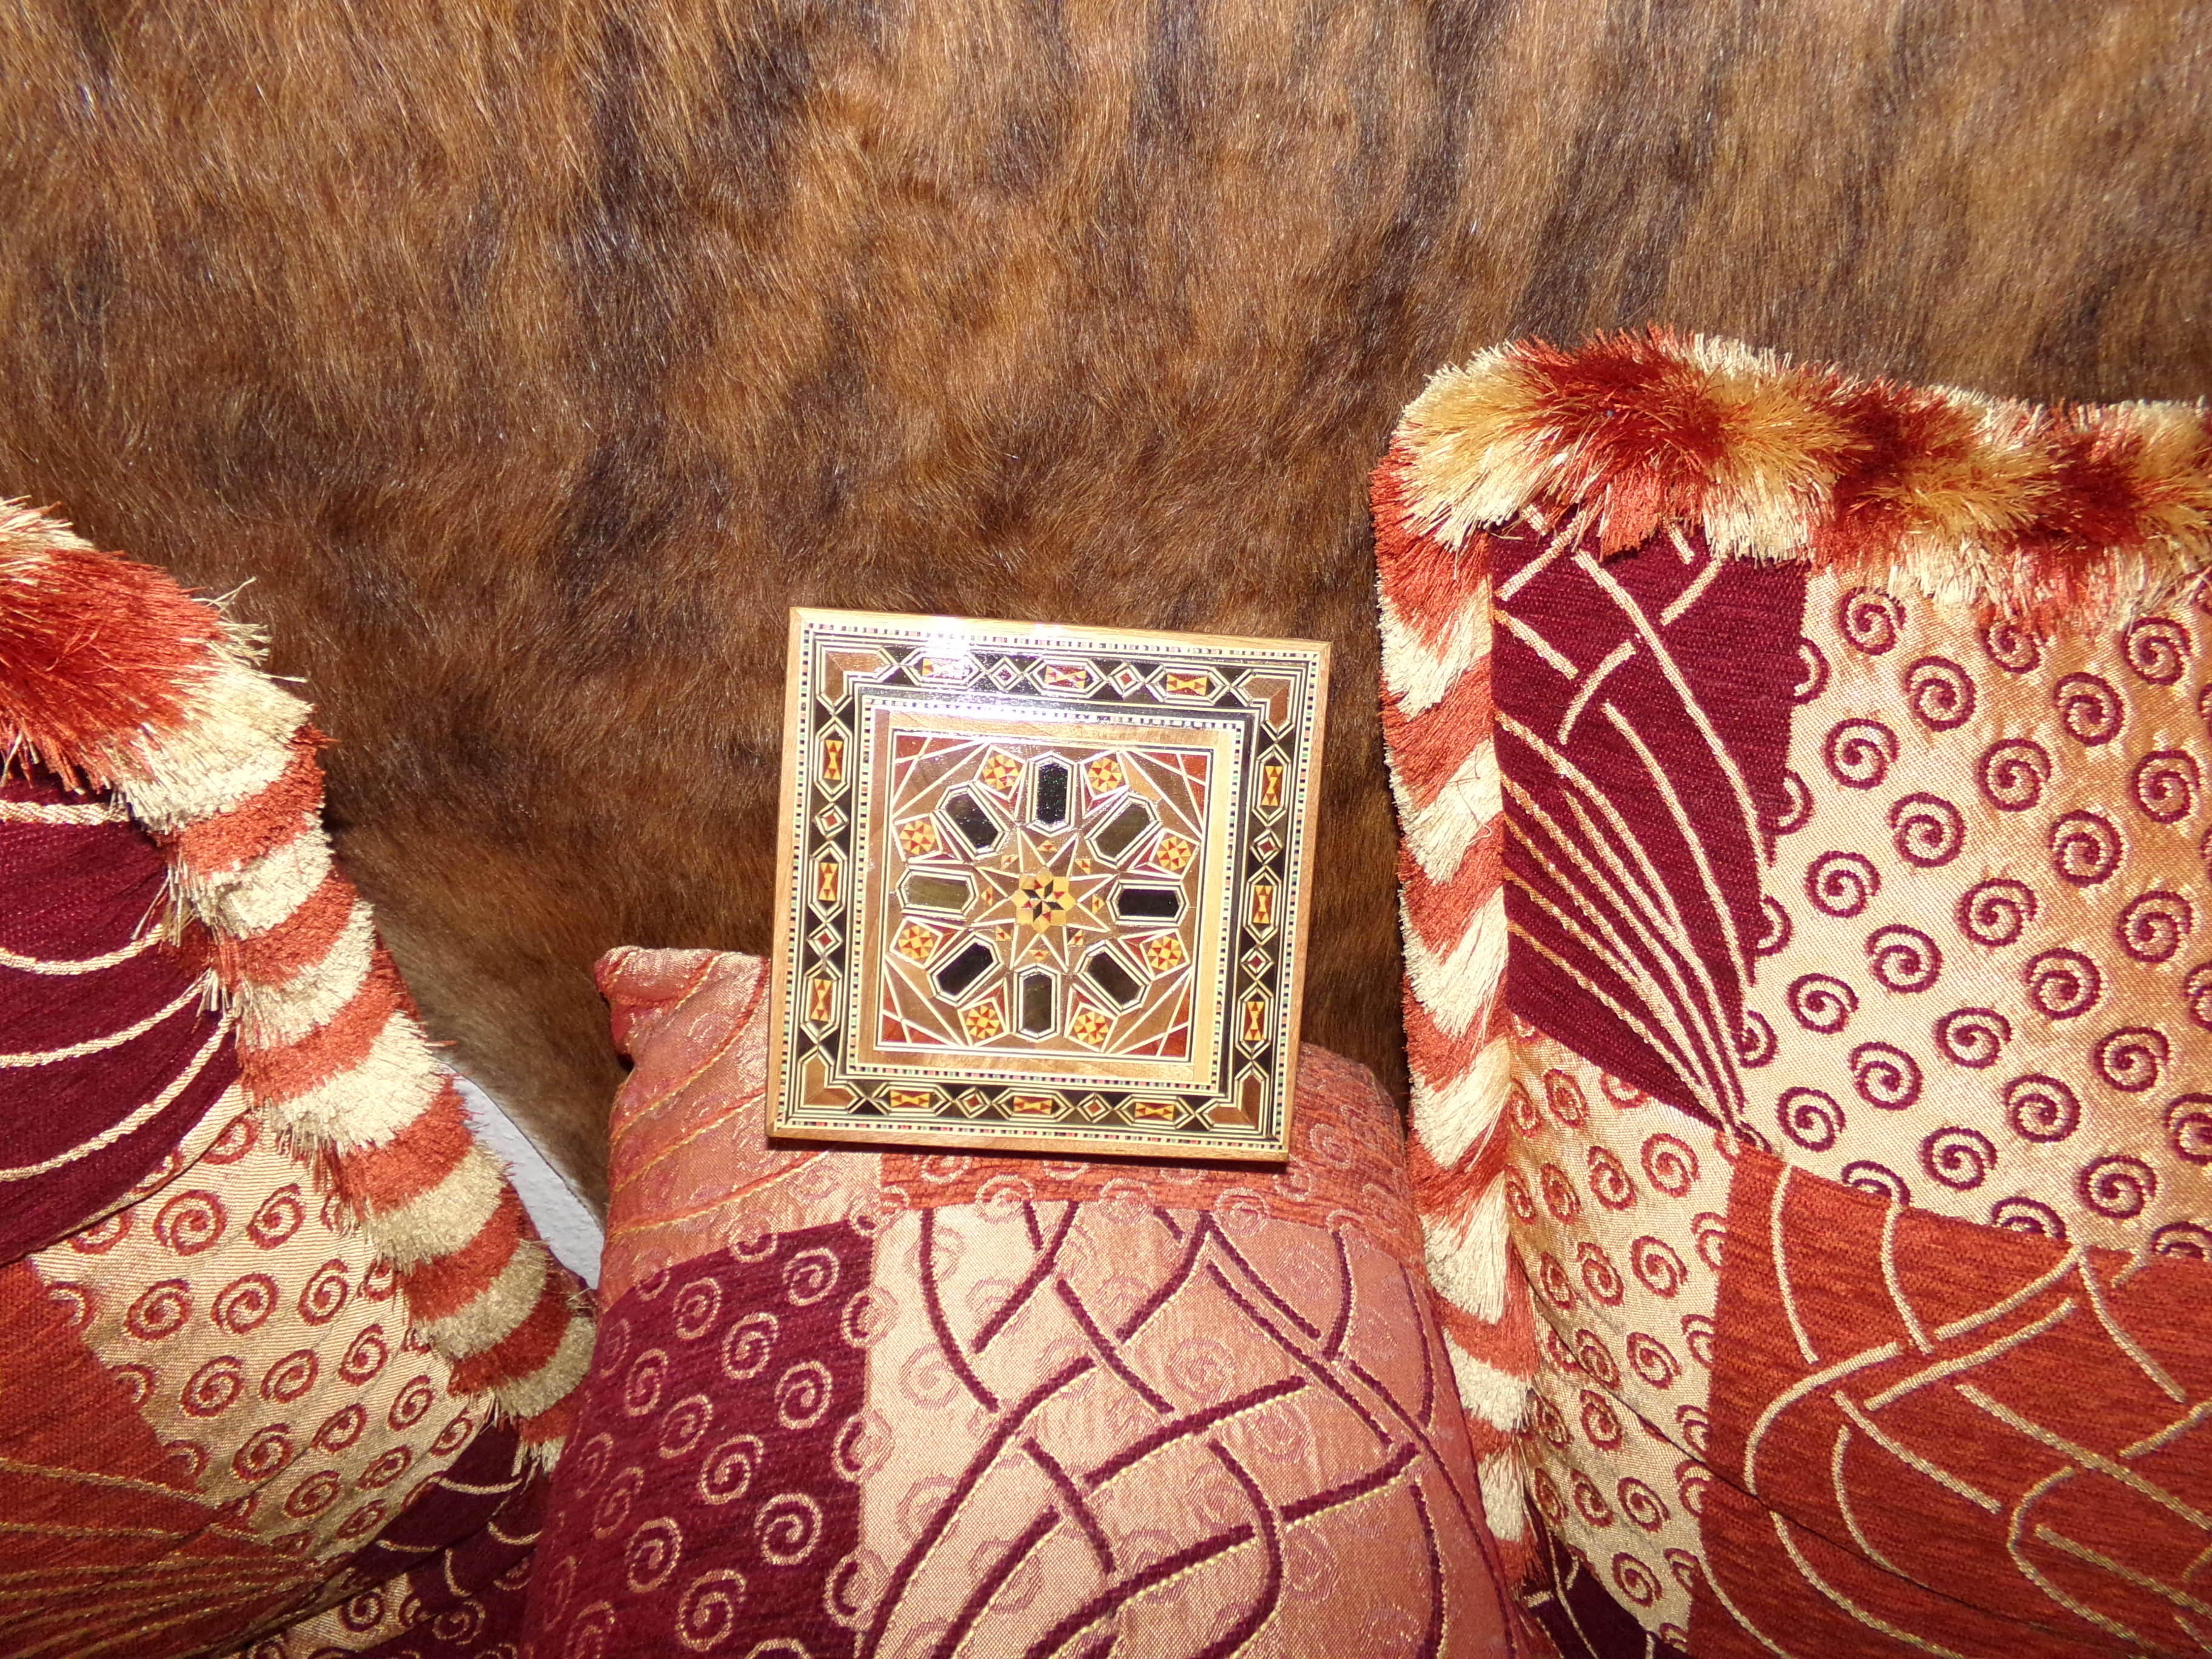 Orientalische Arabische Schmukdose ideal als ein schönes Geschenk